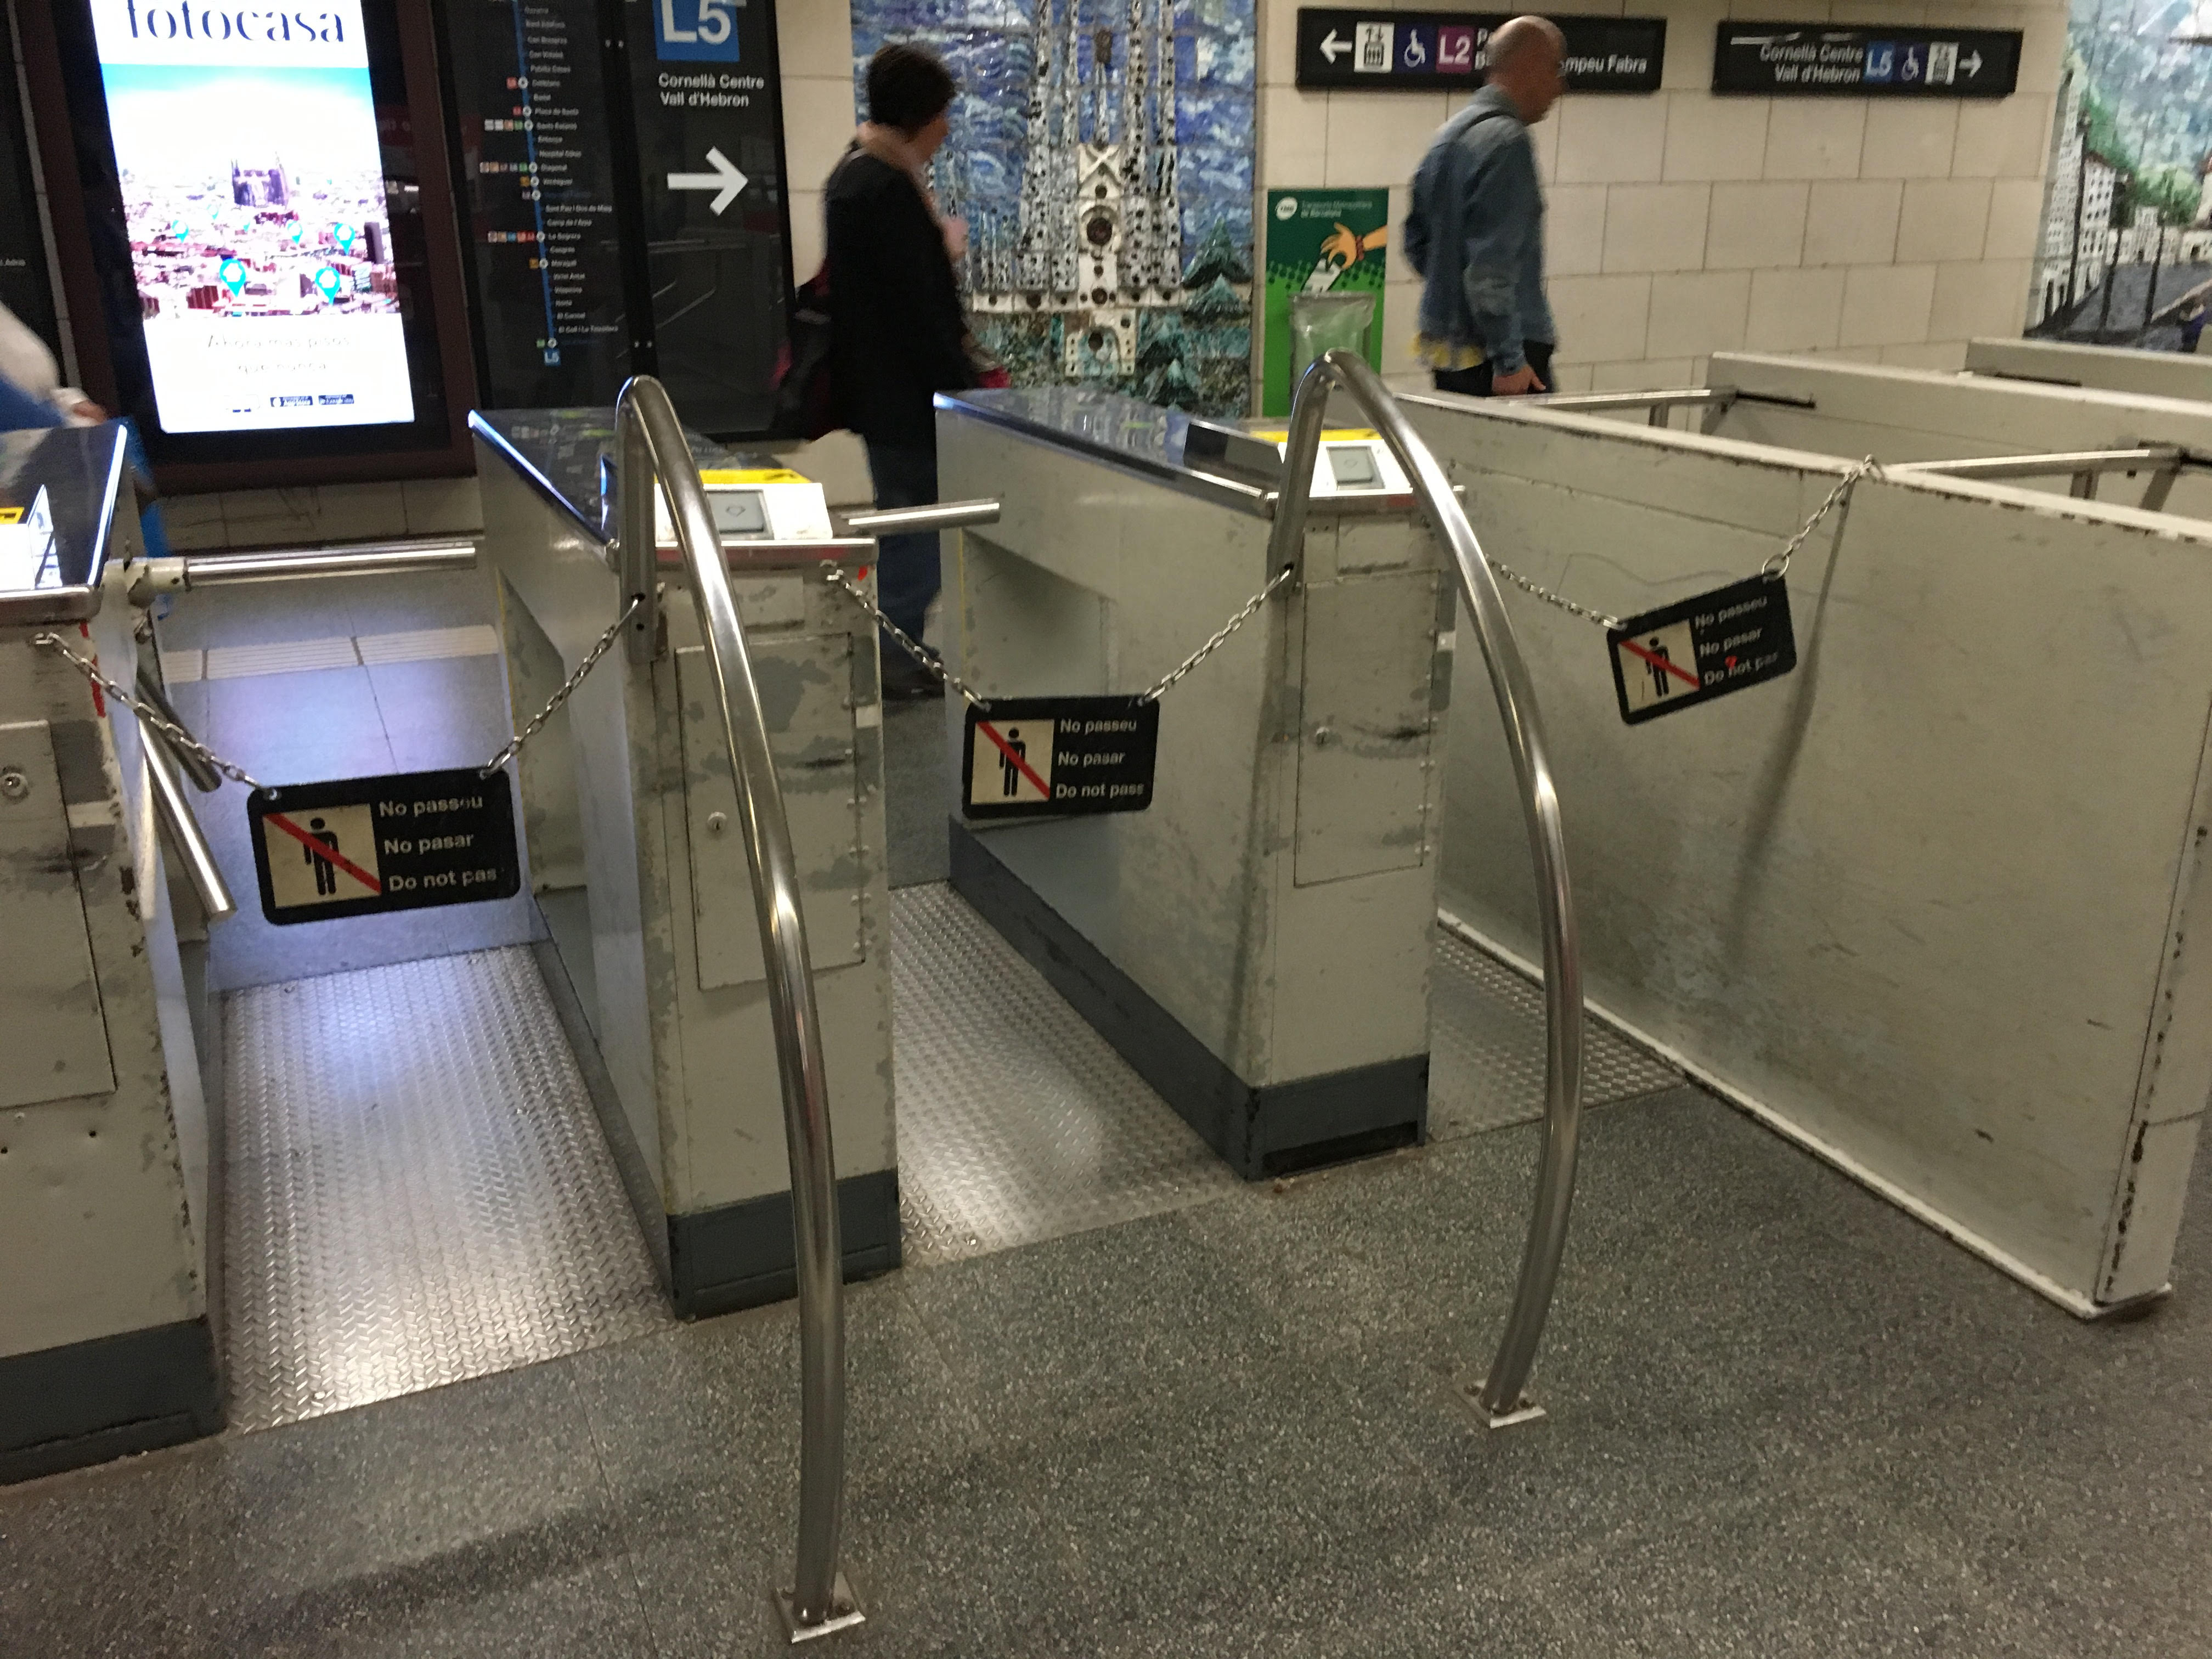 Tres noves jornades de vaga al Metro coincidint amb el Sónar